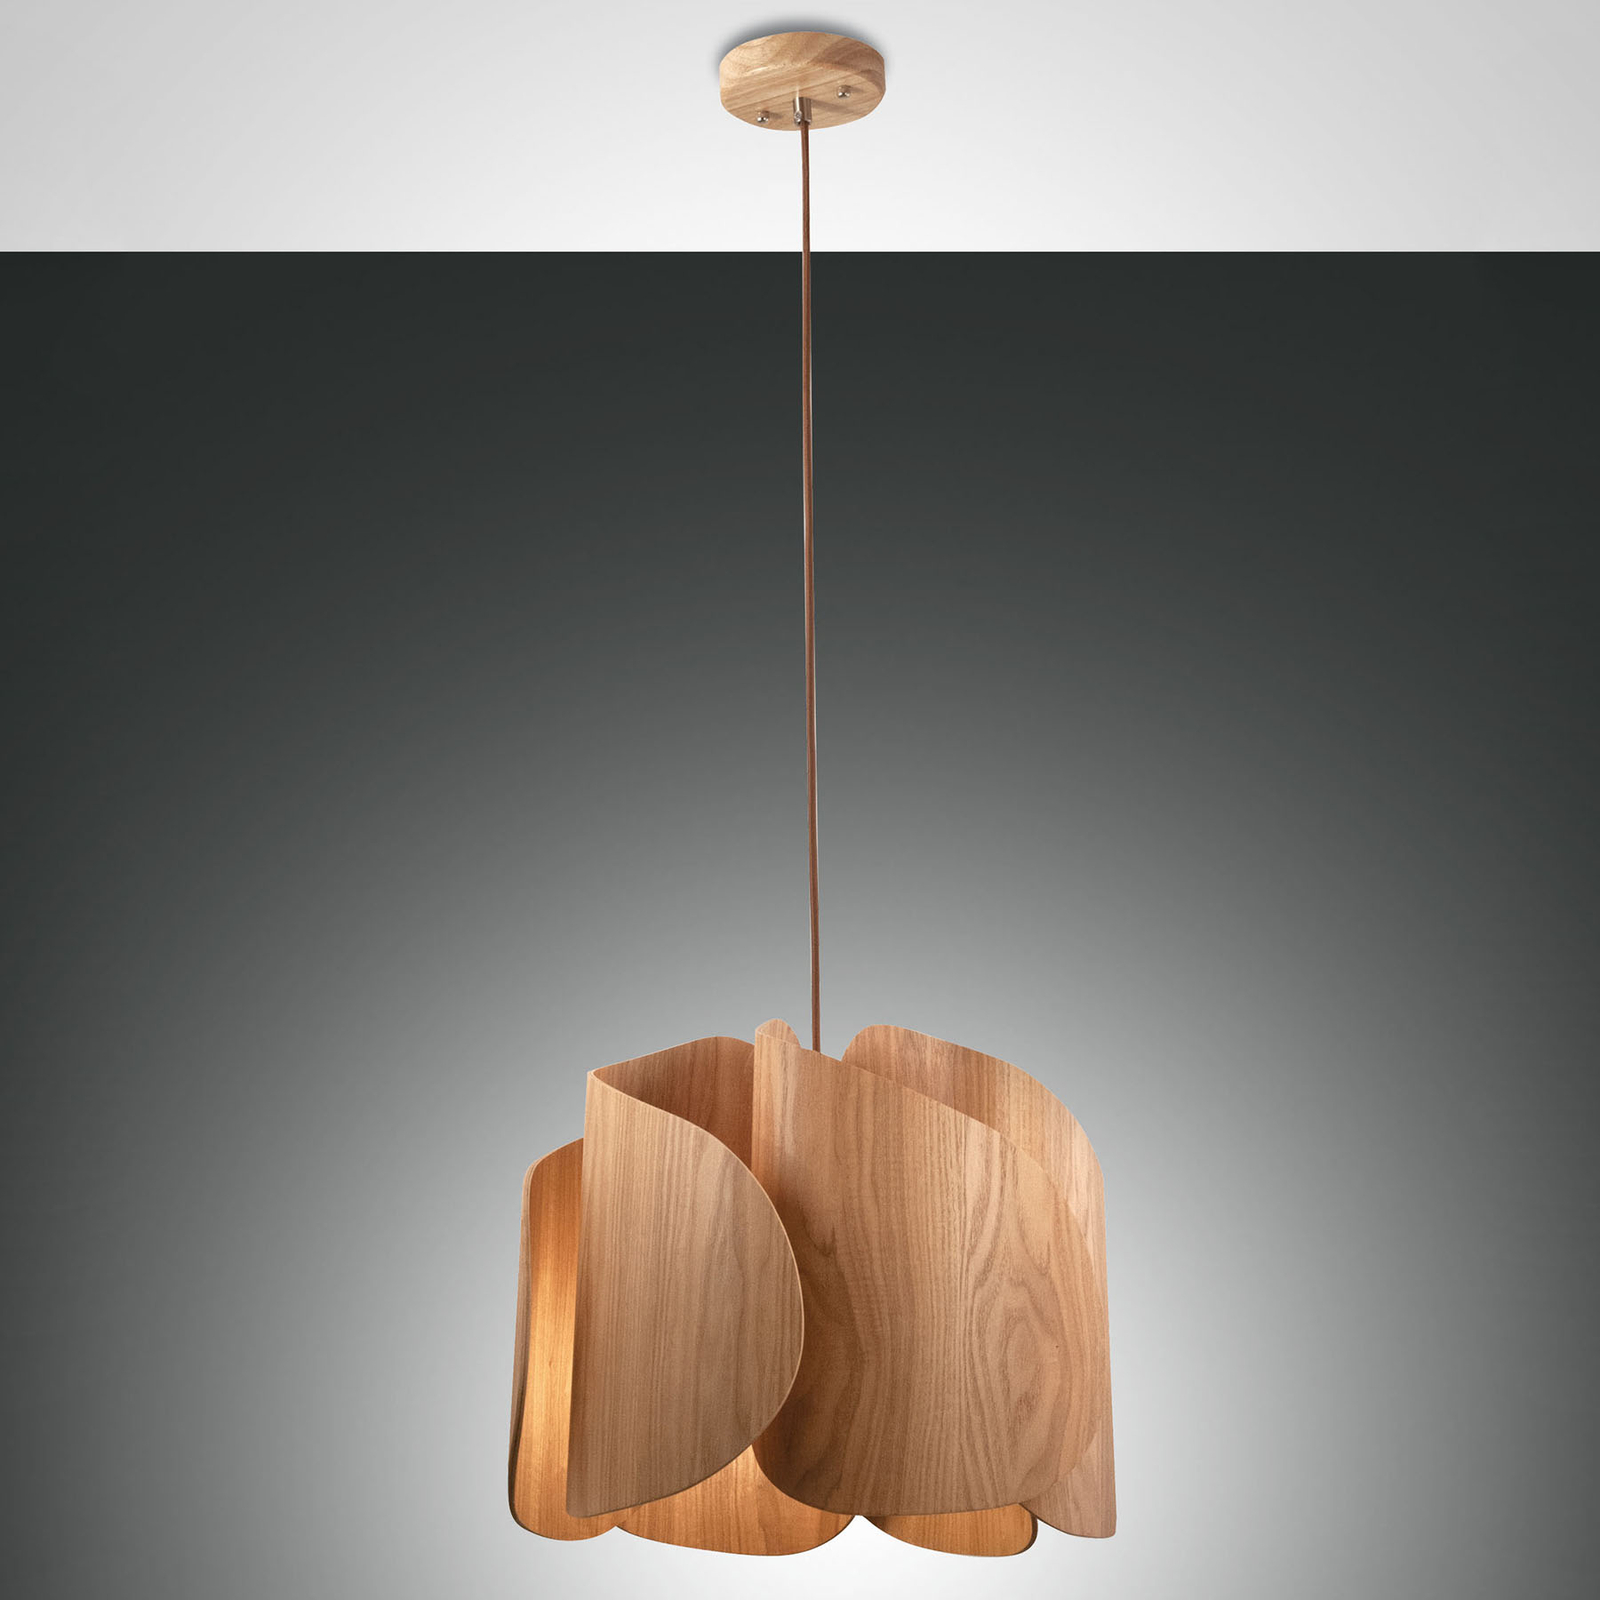 Pevero hængelampe af asketræ, buet form